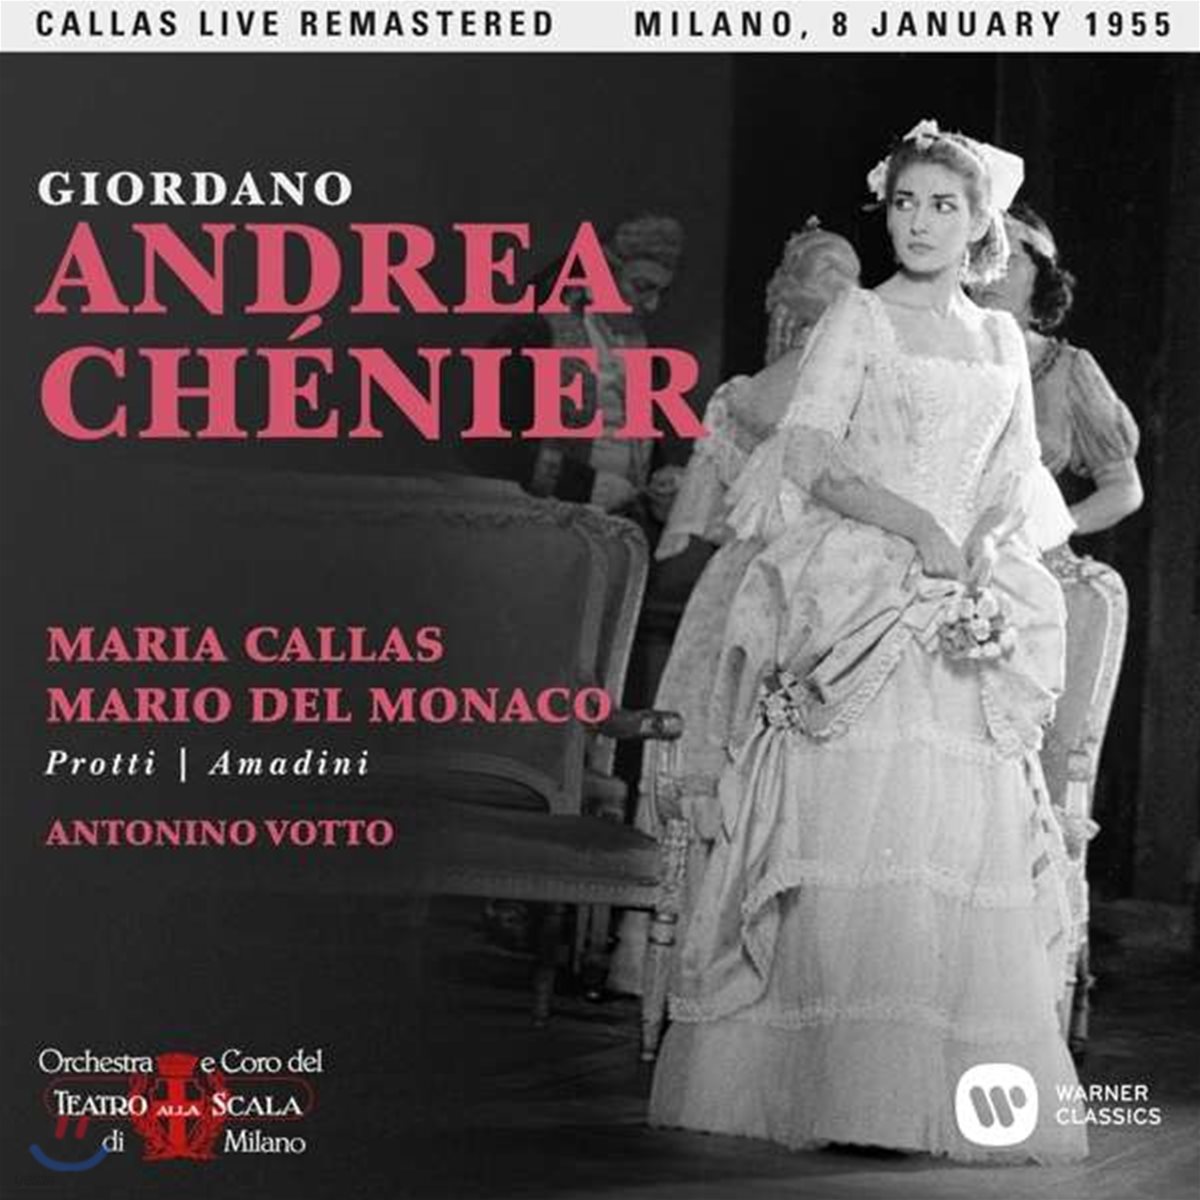 Maria Callas / Mario Del Monaco 지오르다노: 안드레아 셰니에 - 마리아 칼라스, 마리오 델 모나코 / 1955년 밀라노 라 스칼라 실황 (Giordano: Andrea Chenier)